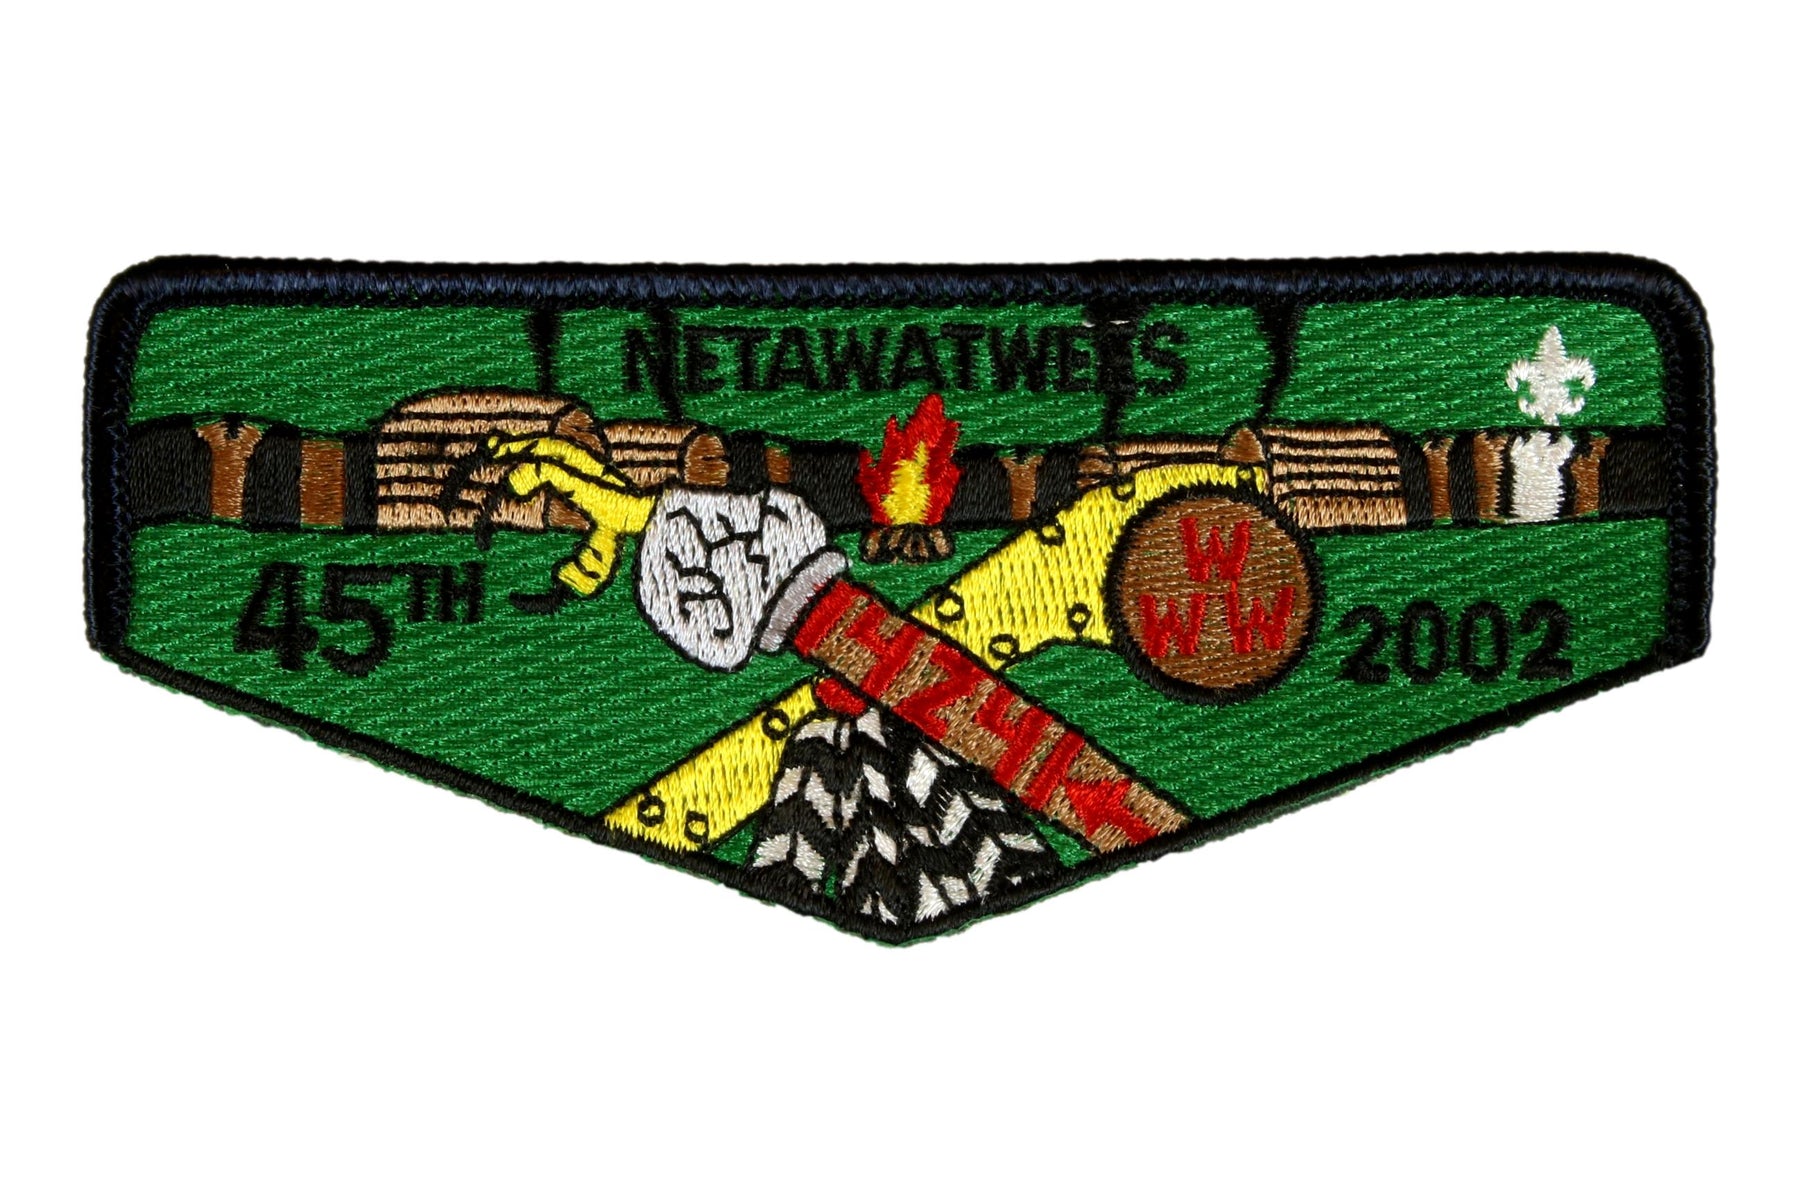 Lodge 424 Netawatwees Flap S-50